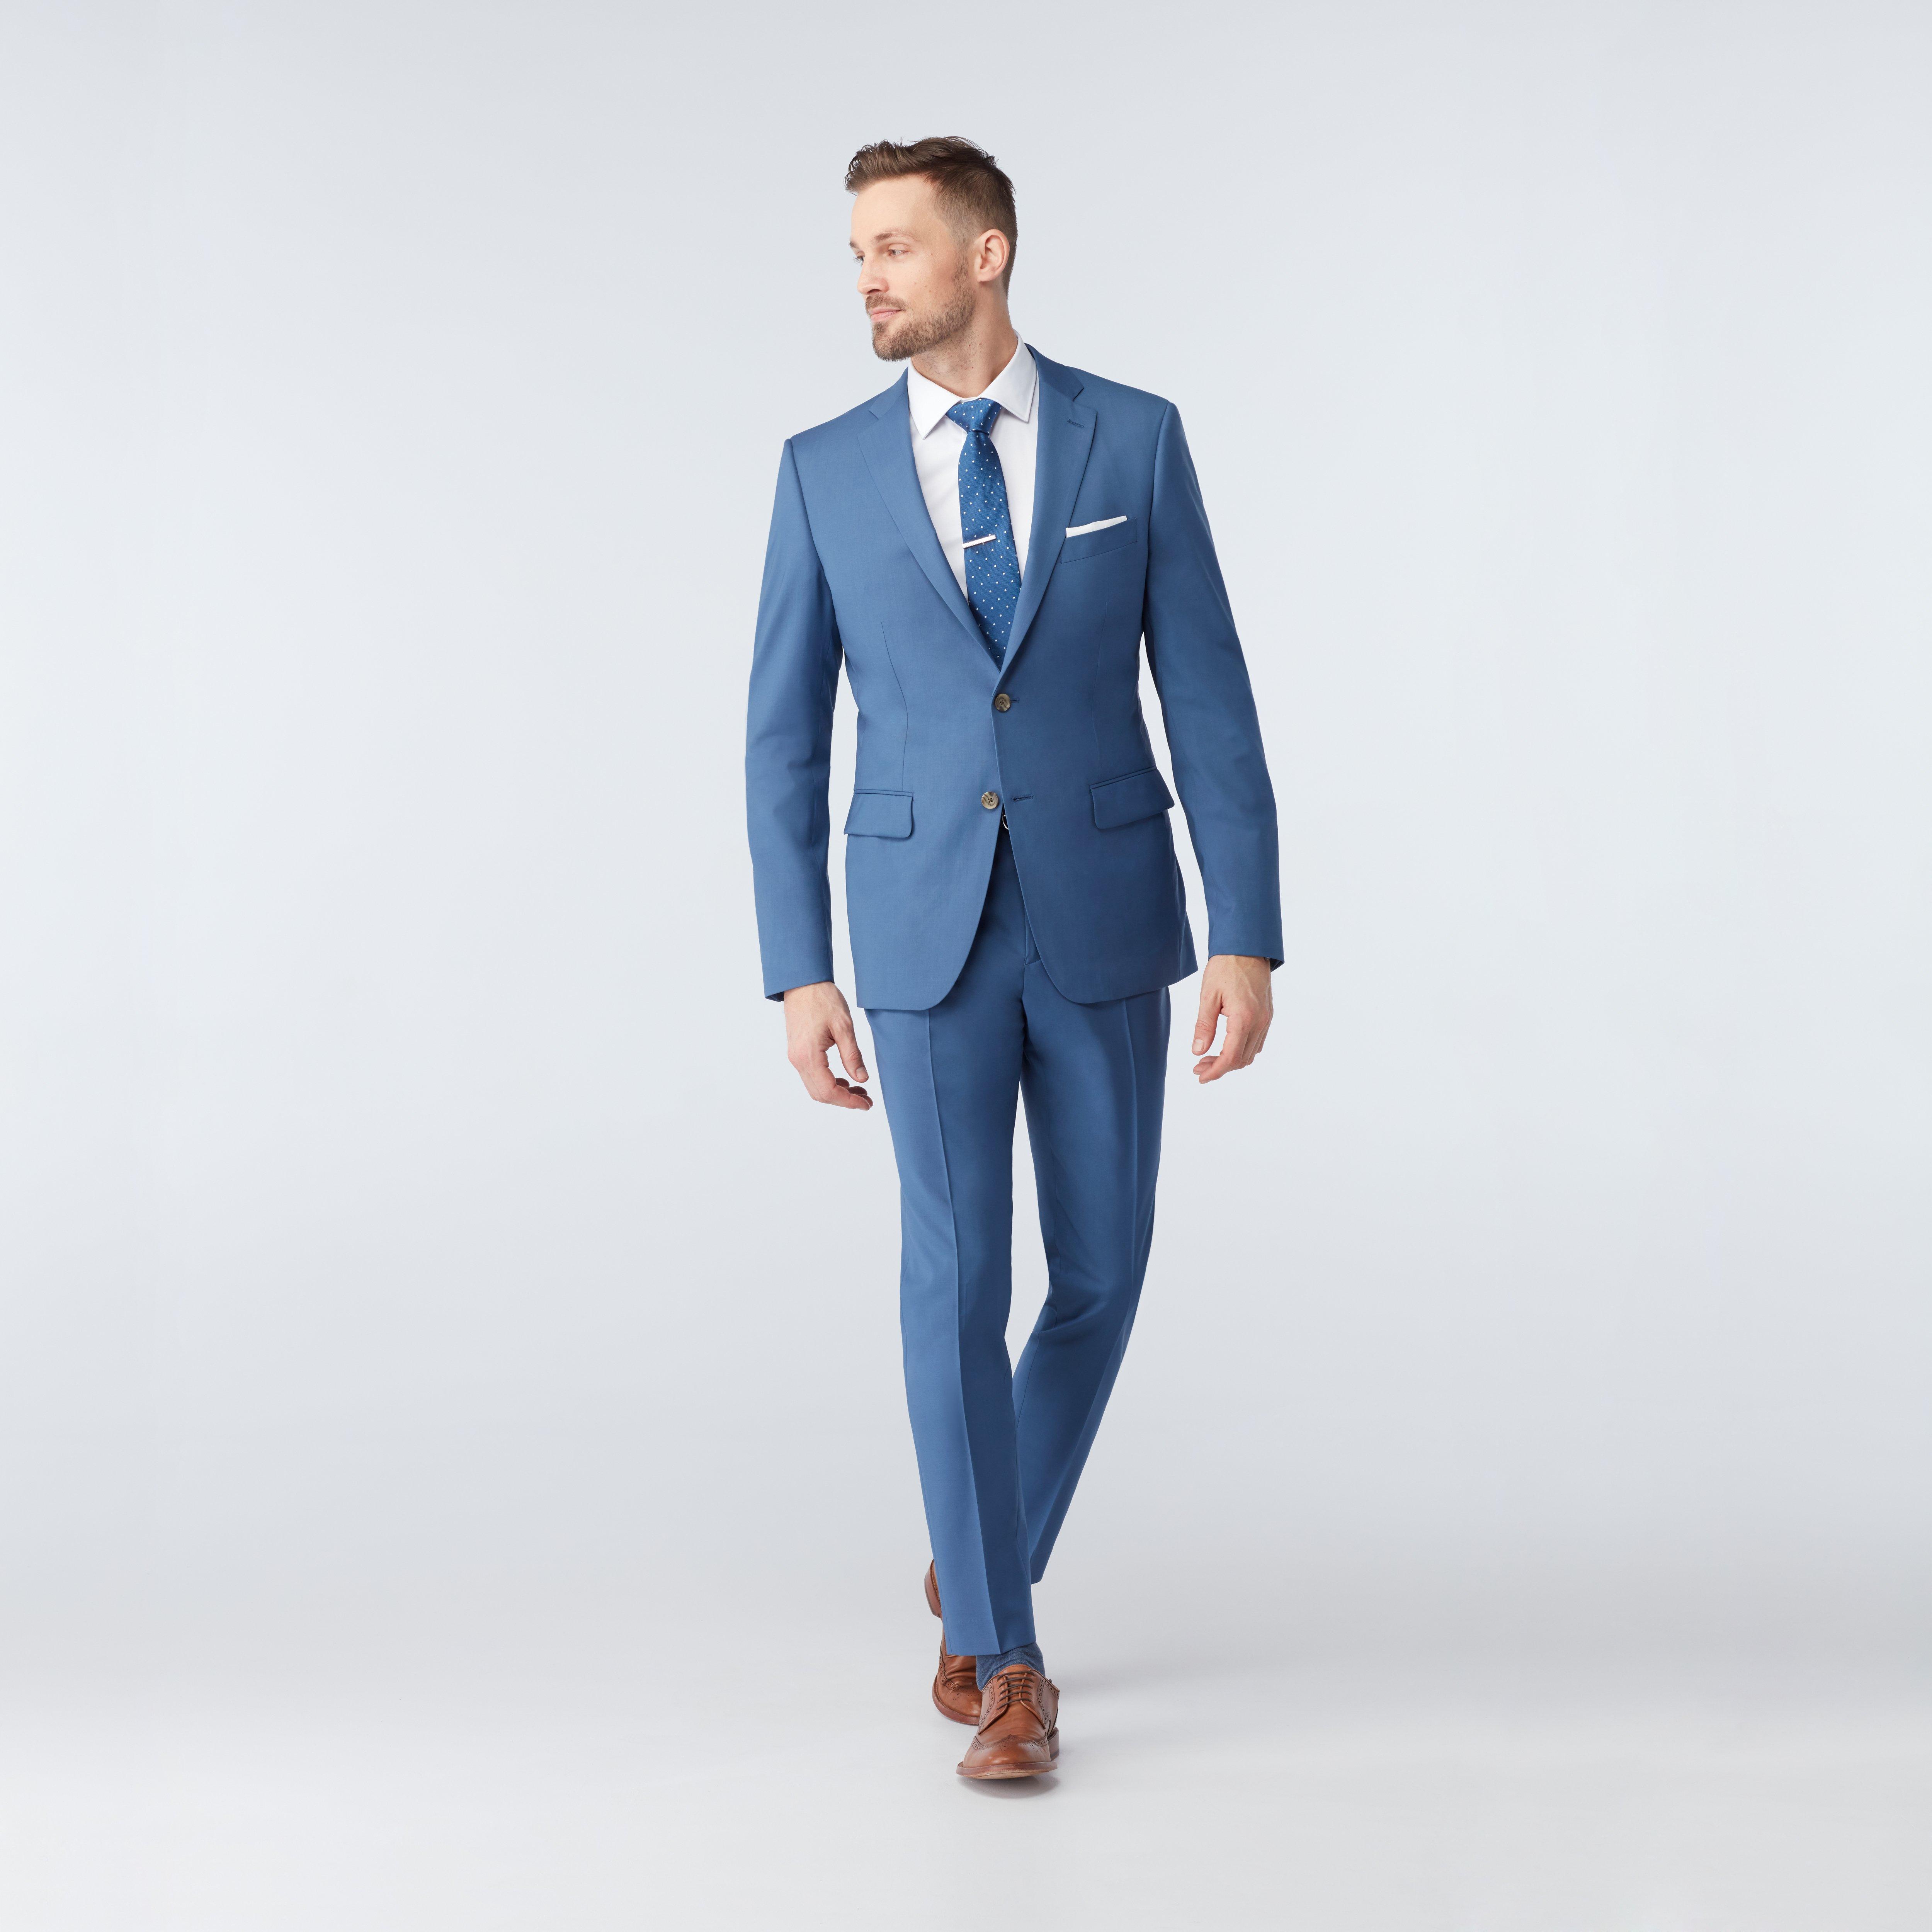 Premium Suits - Men's Custom Suits | INDOCHINO